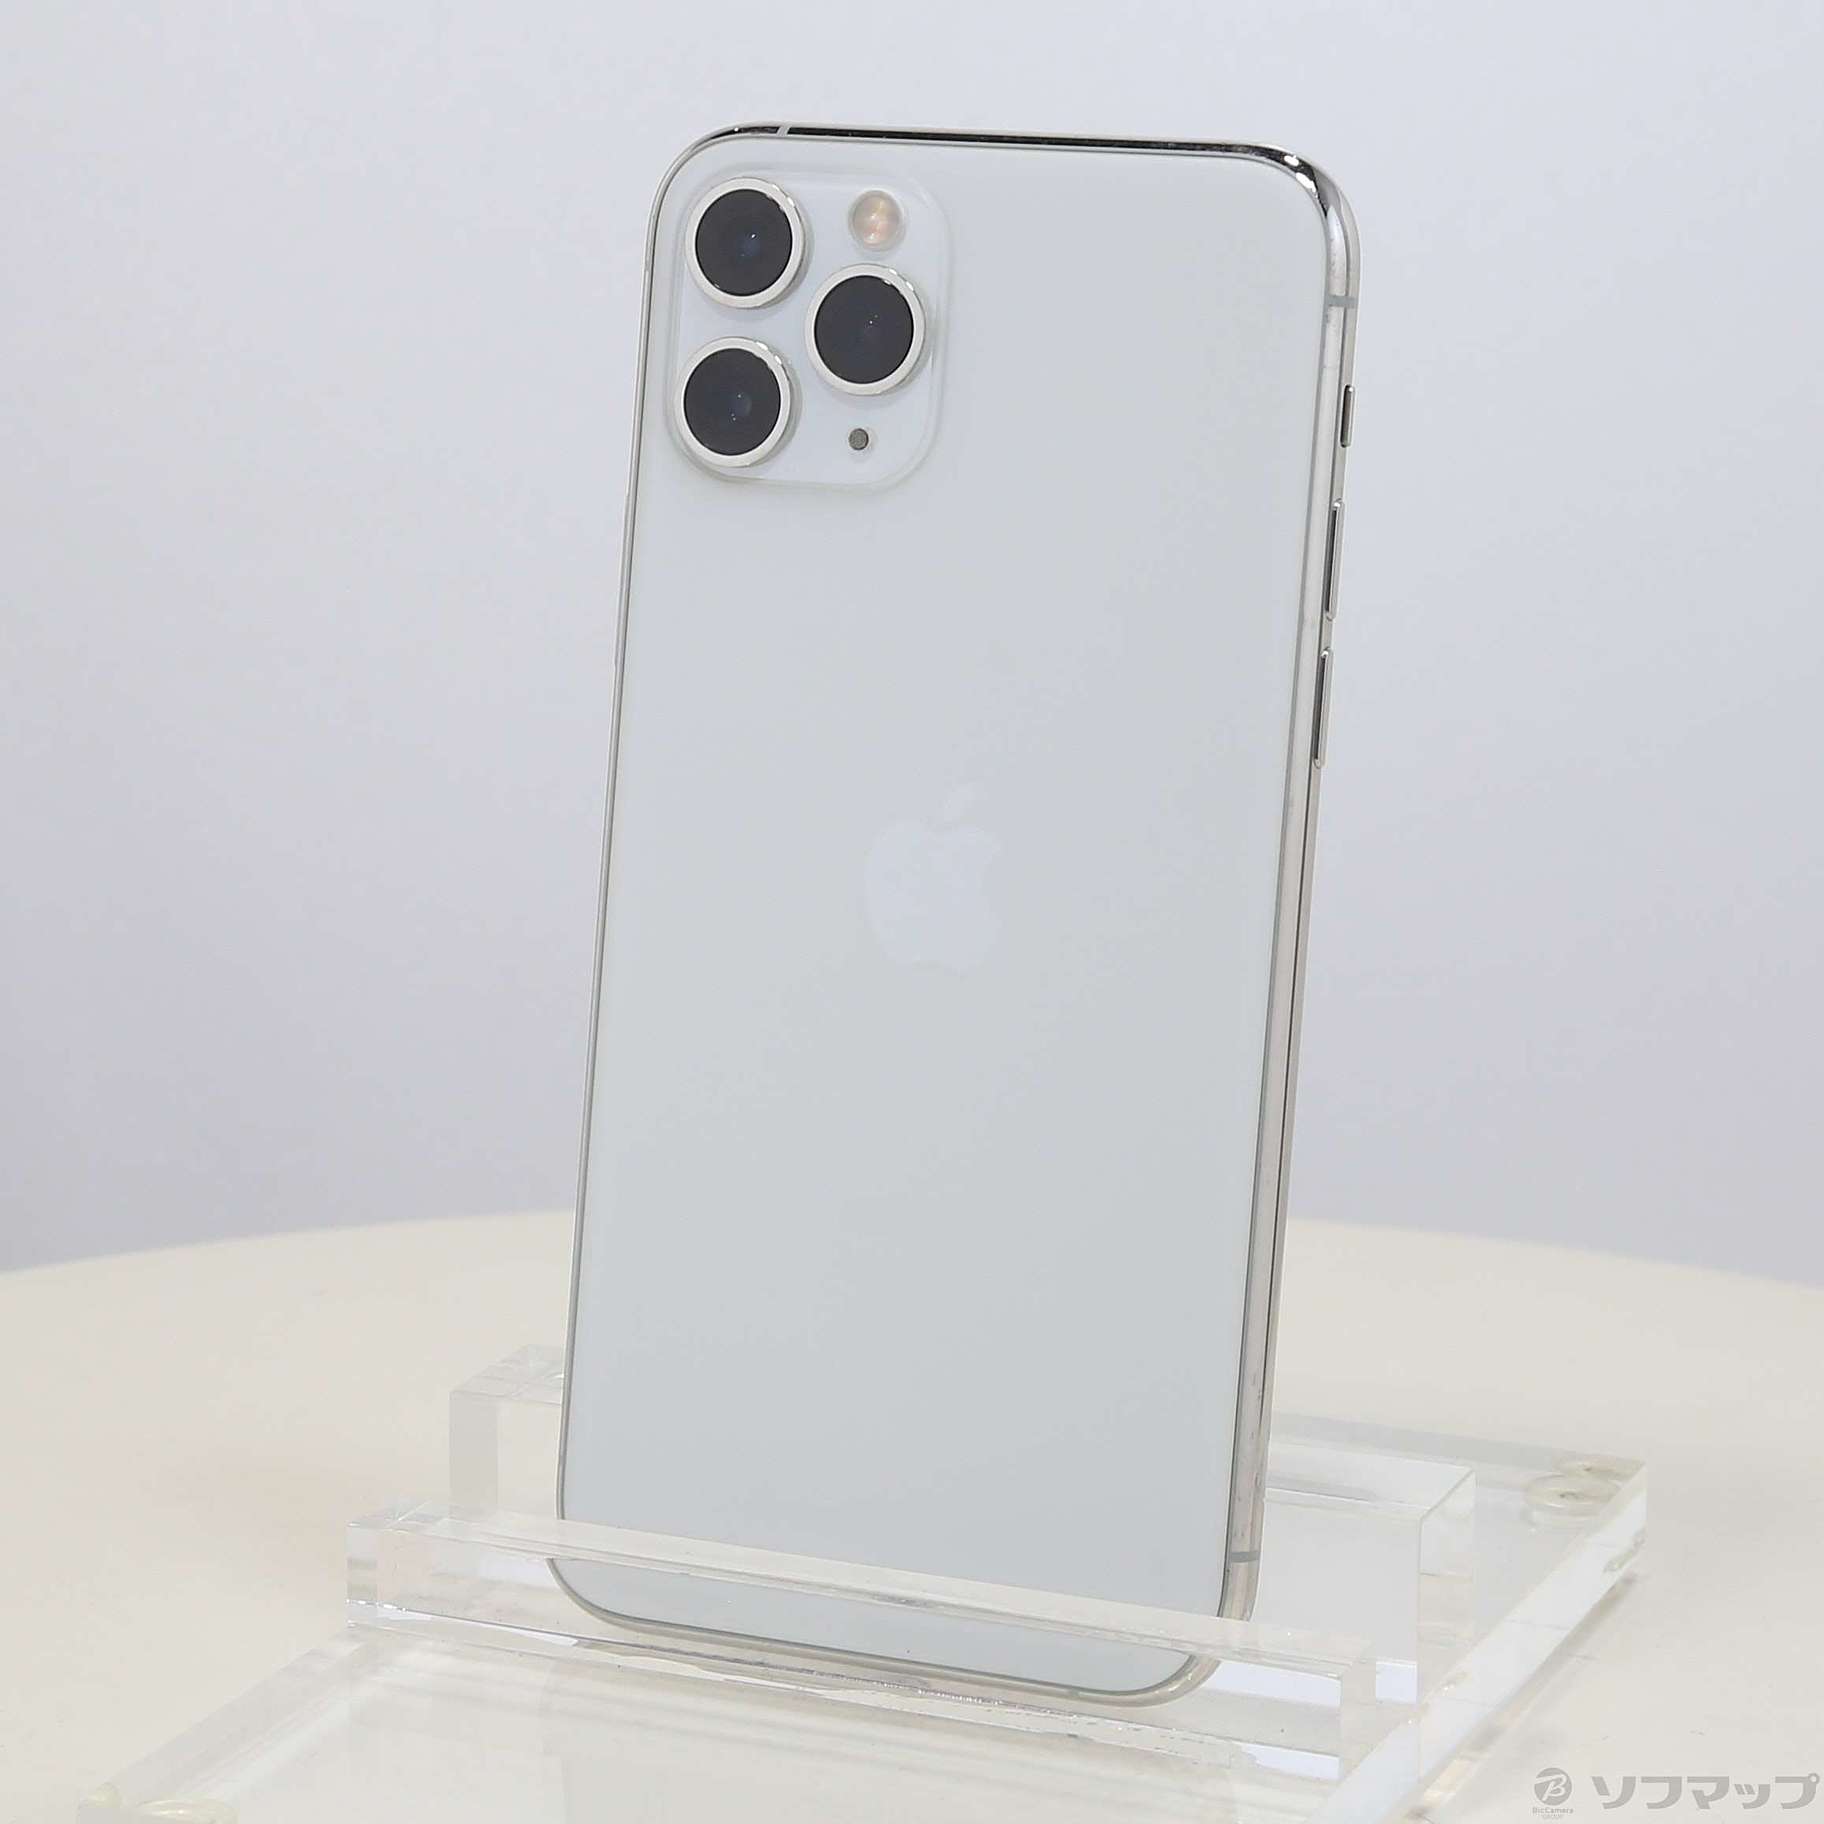 正規逆輸入品】 iPhone - シルバー ホワイト MWC82J/A 256GB pro iPhone11 スマートフォン本体 -  daloon.com